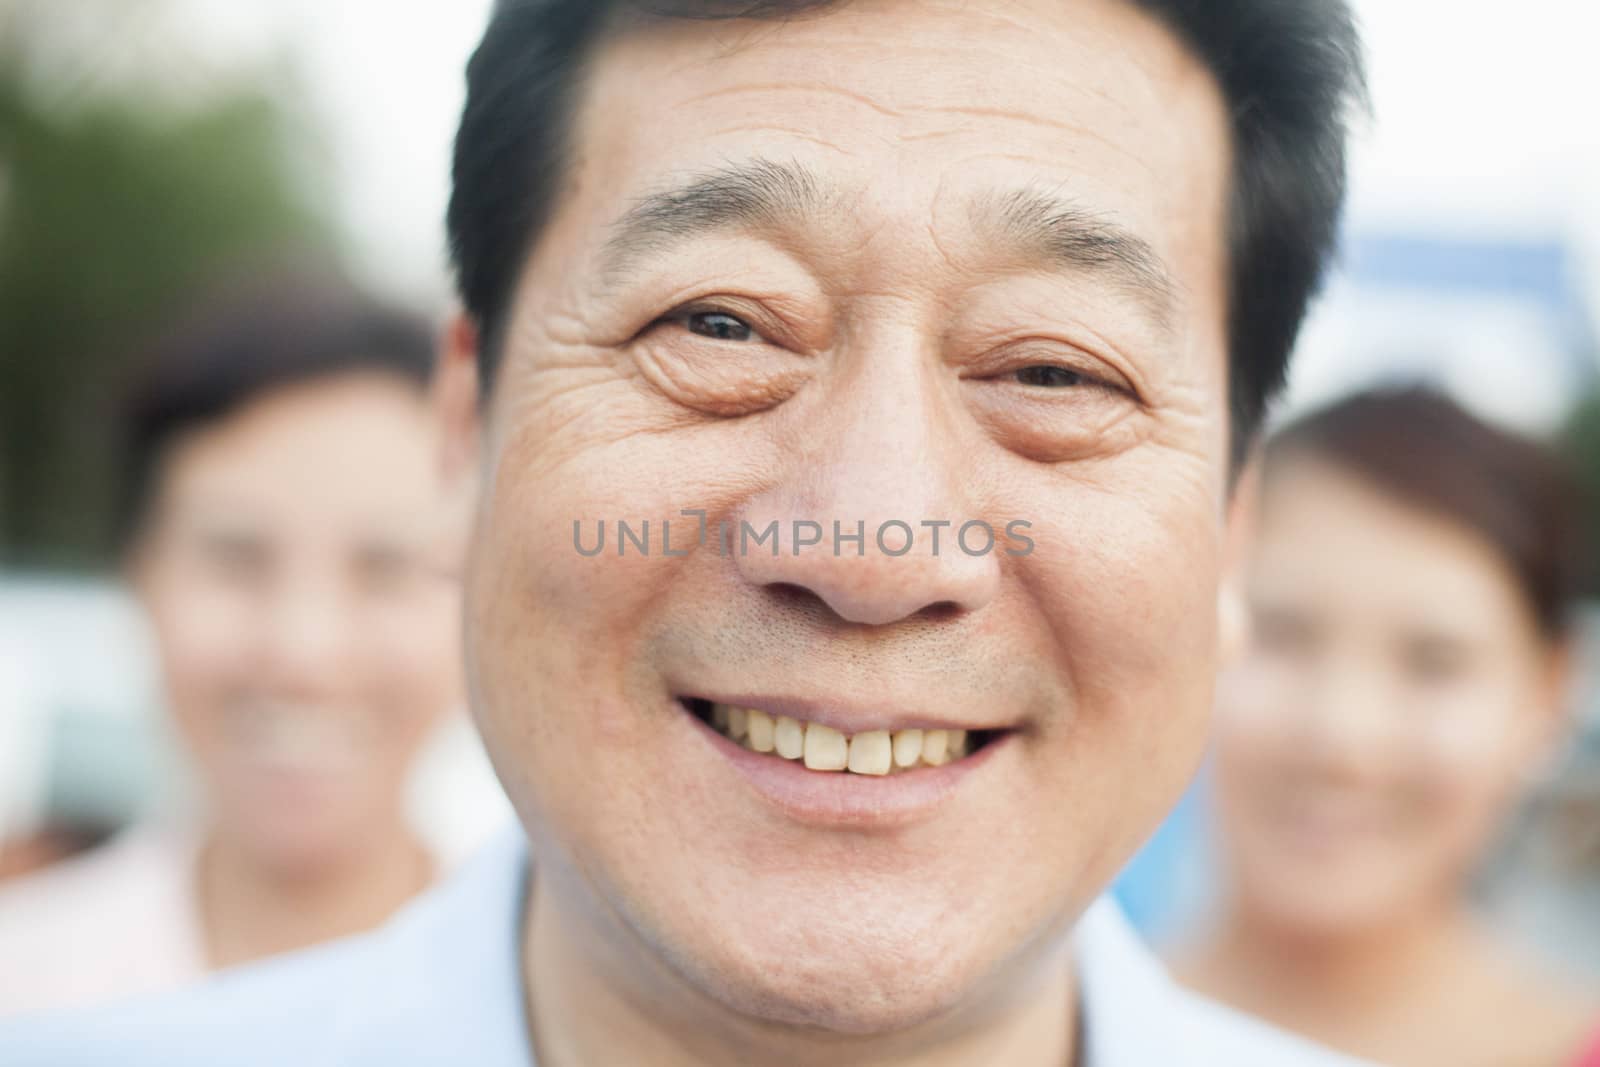 Man smiling, portrait